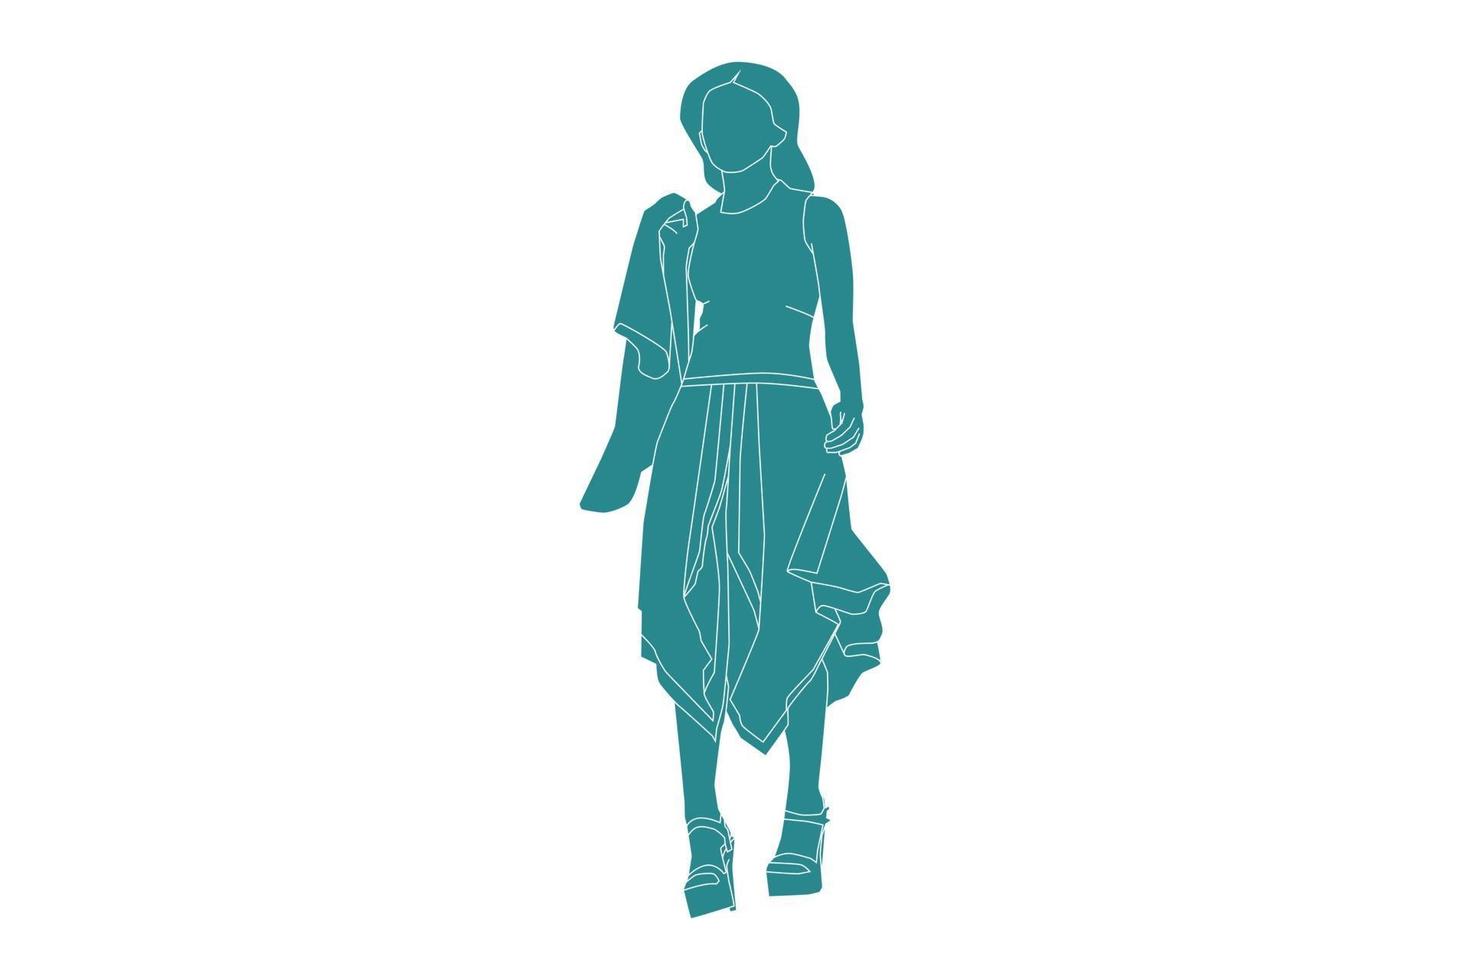 vektor illustration av fashionabla kvinna poserar, platt stil med disposition